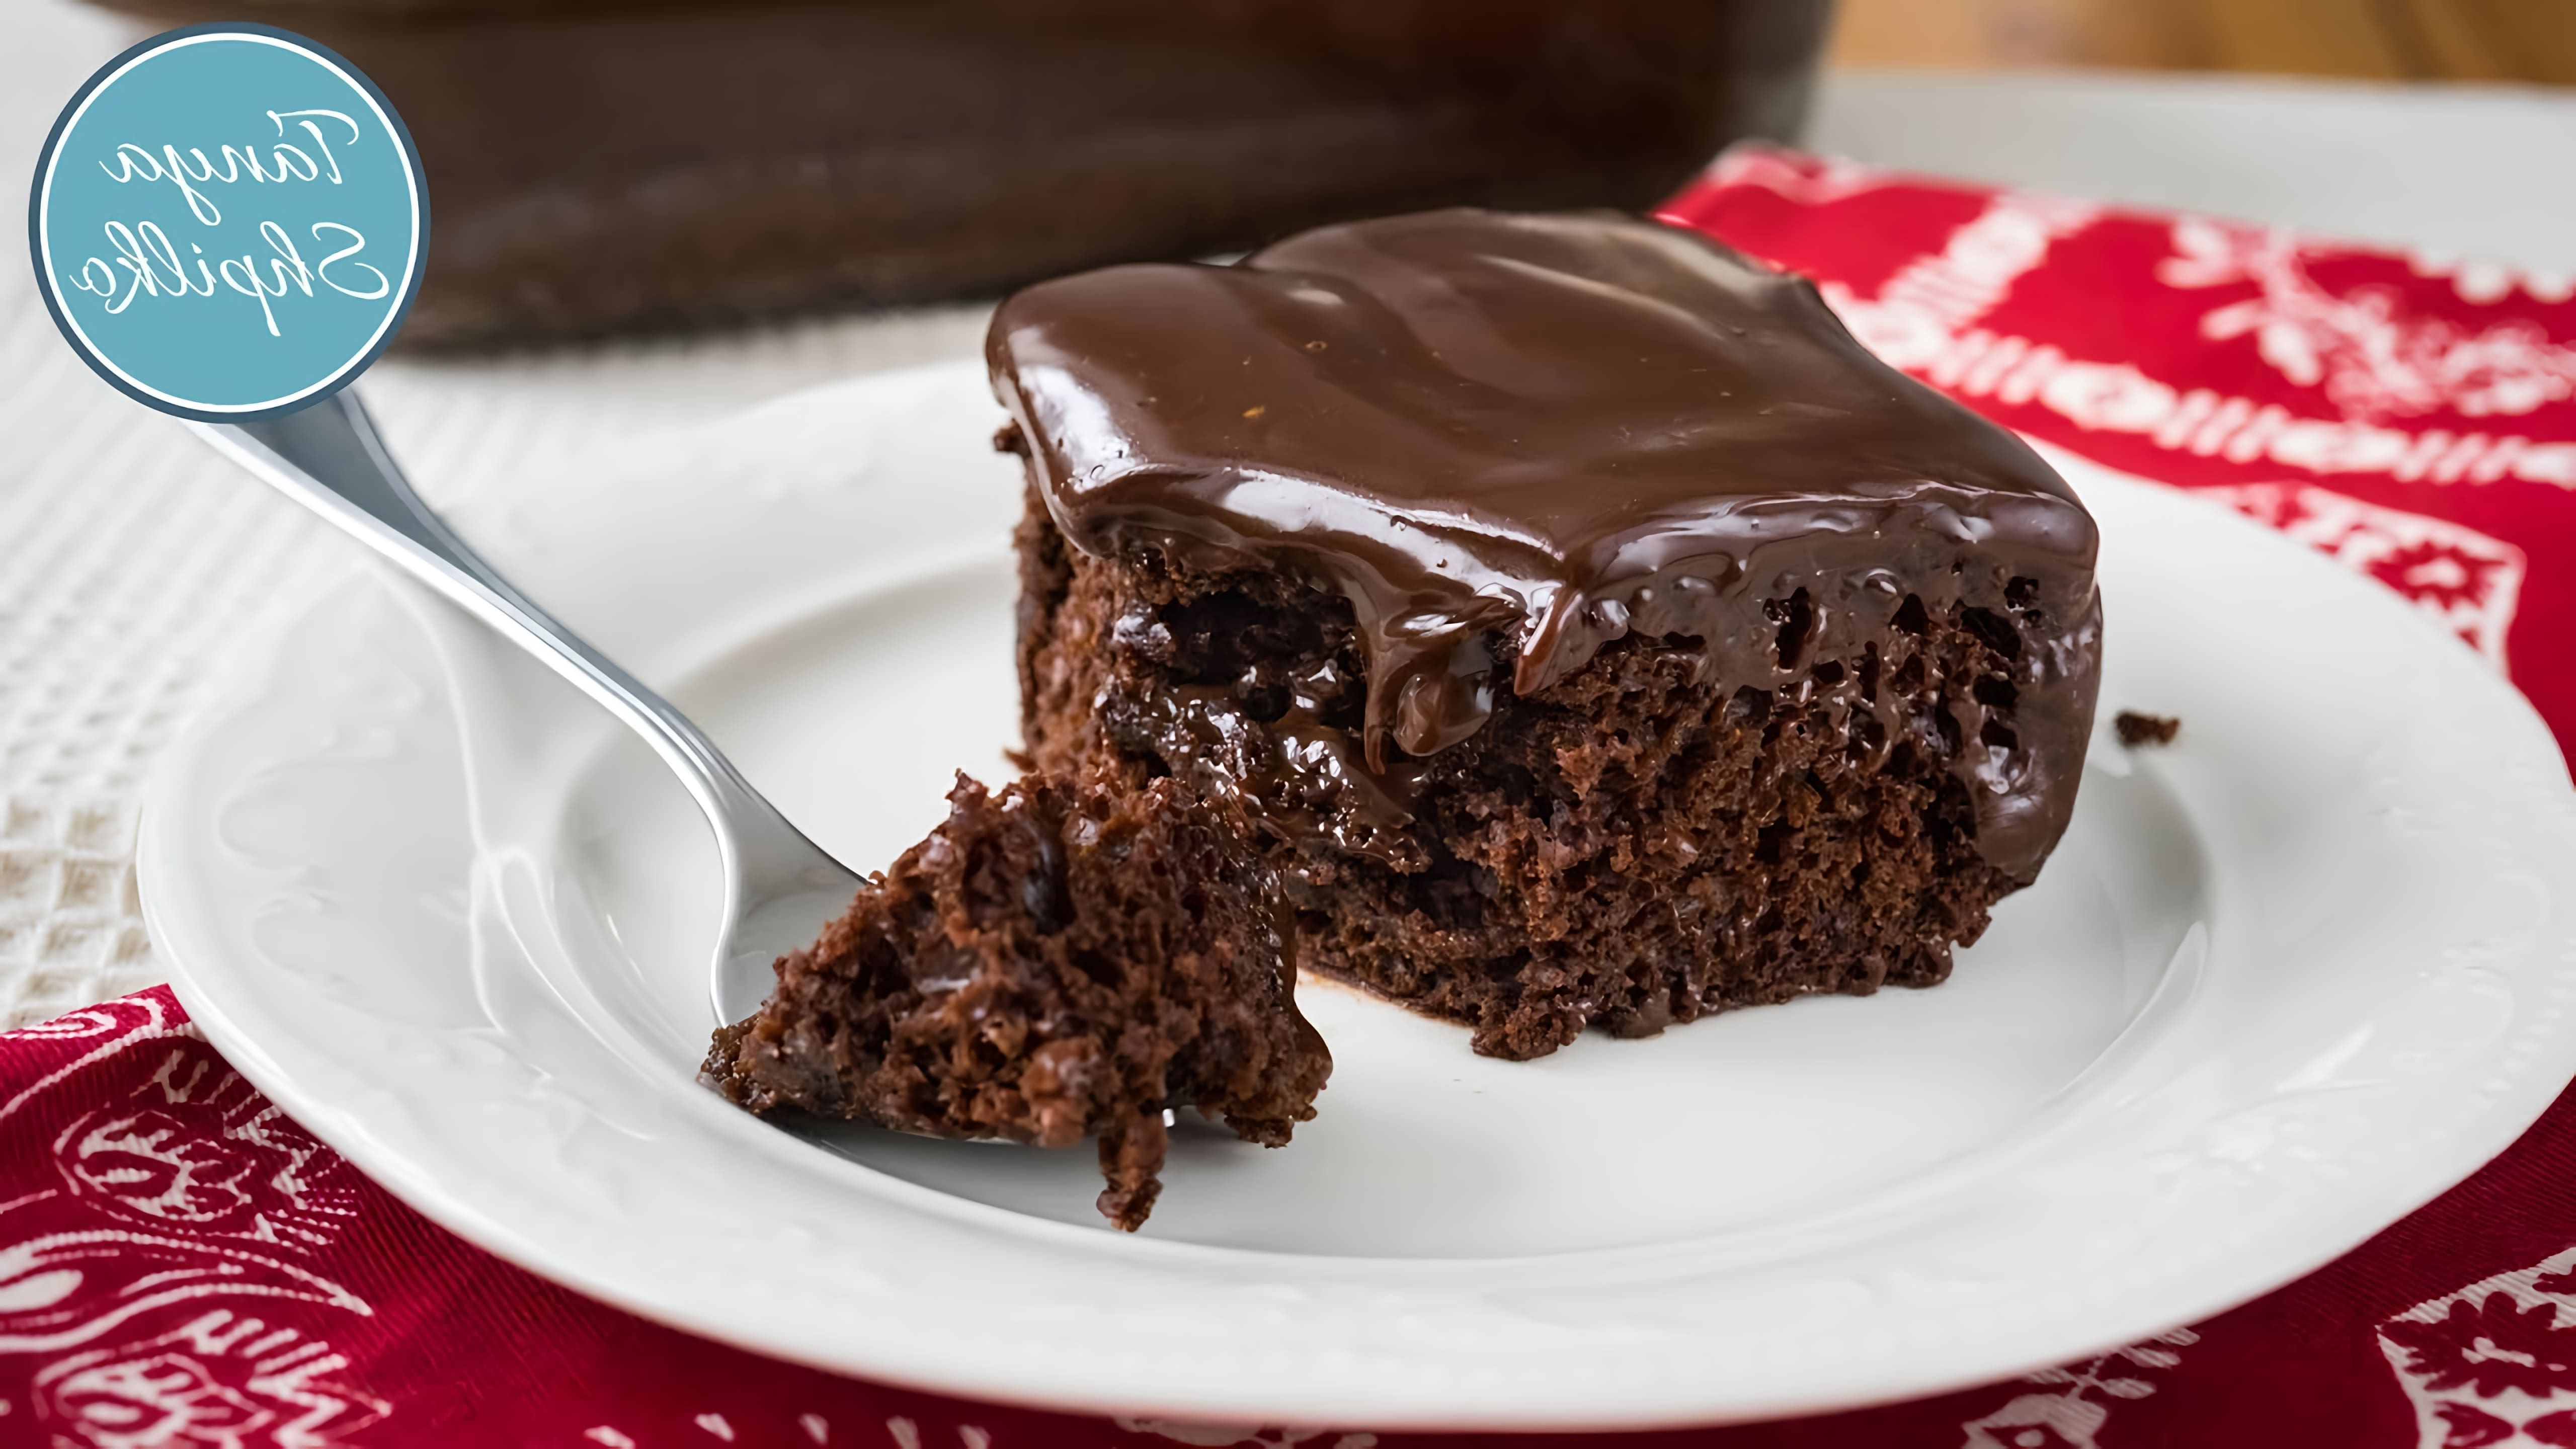 В этом видео демонстрируется рецепт мега шоколадного пирога с ганашем